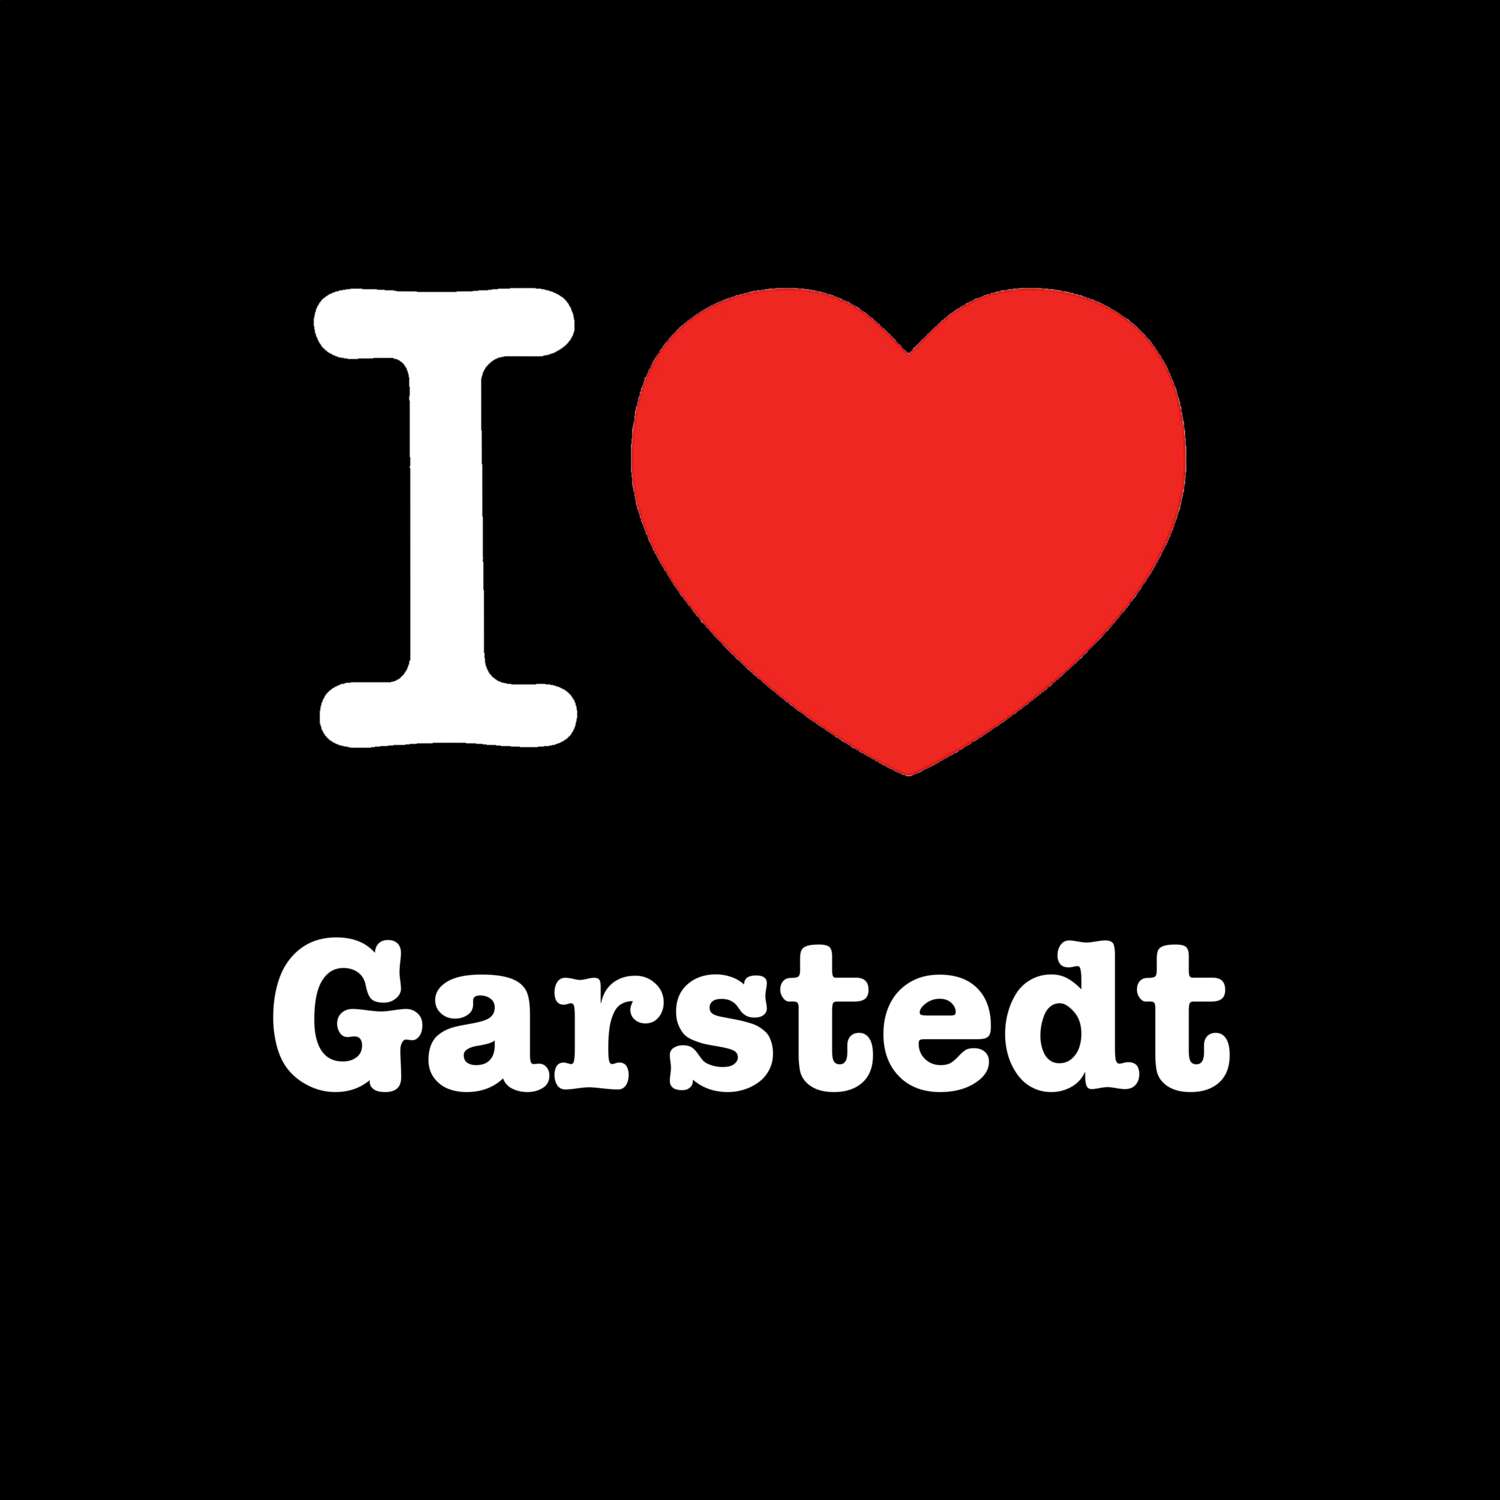 Garstedt T-Shirt »I love«